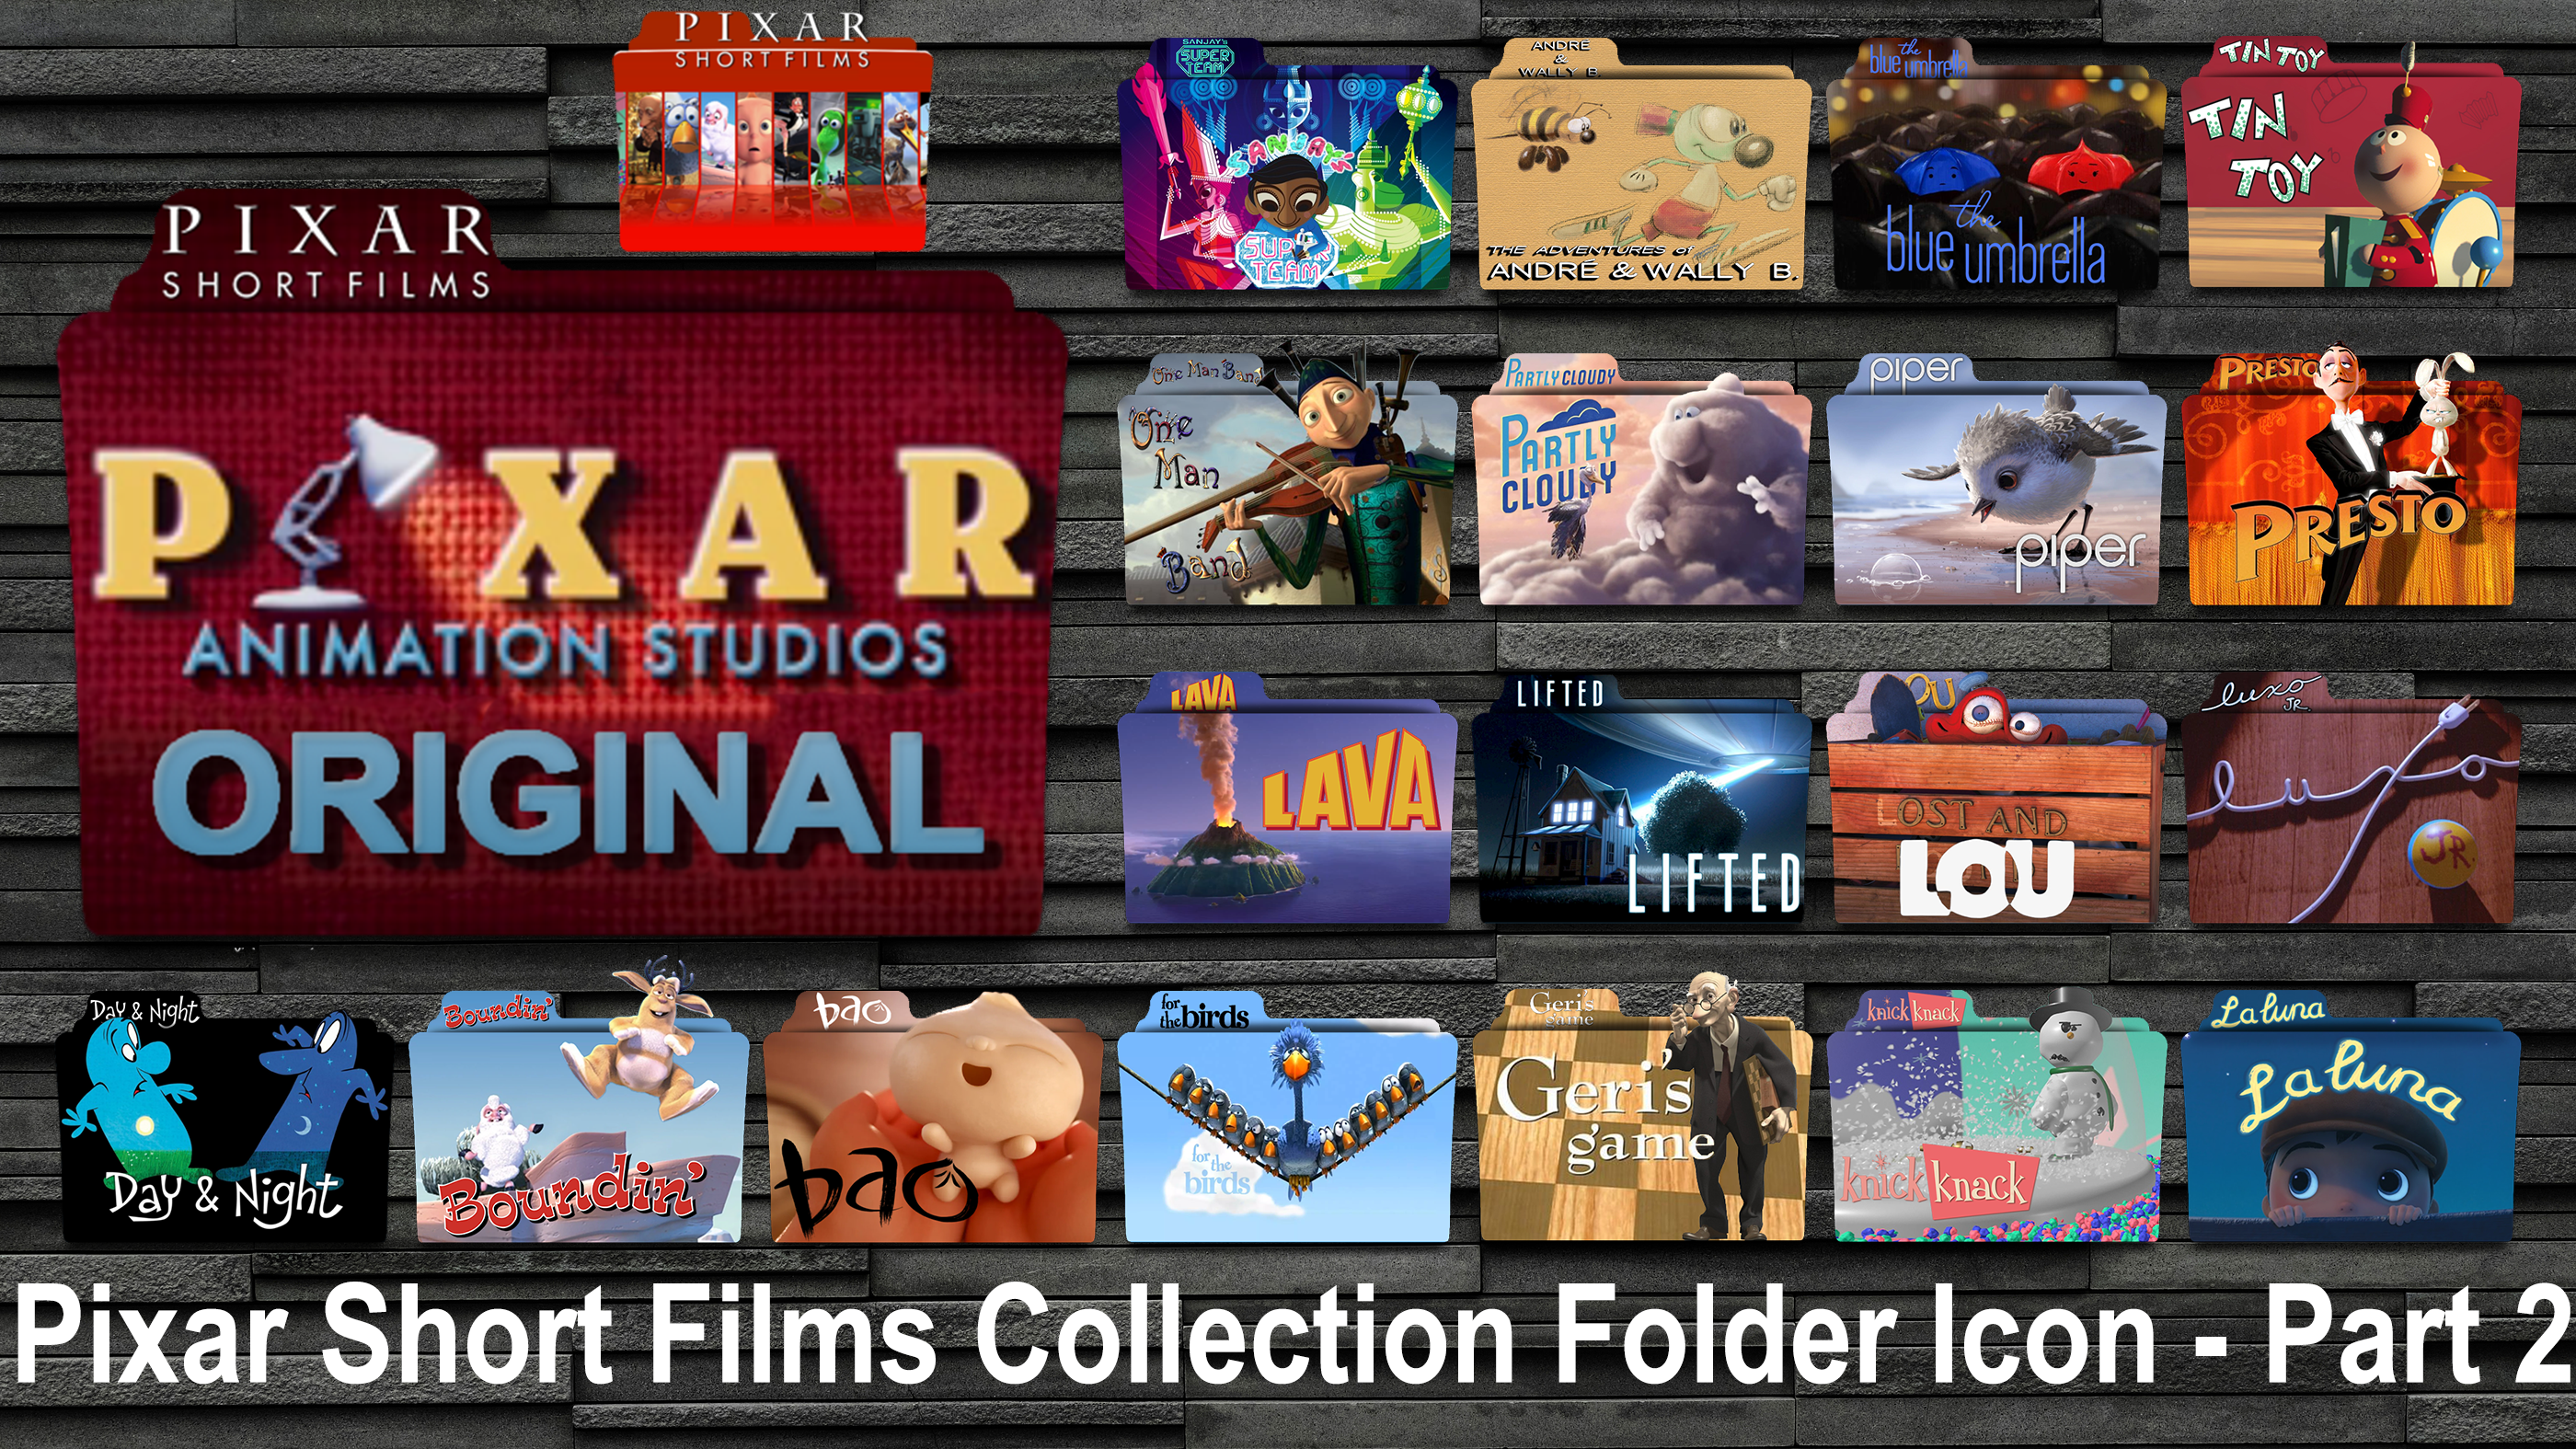 Pixar short films. Pixar short films collection 2. Short films collection